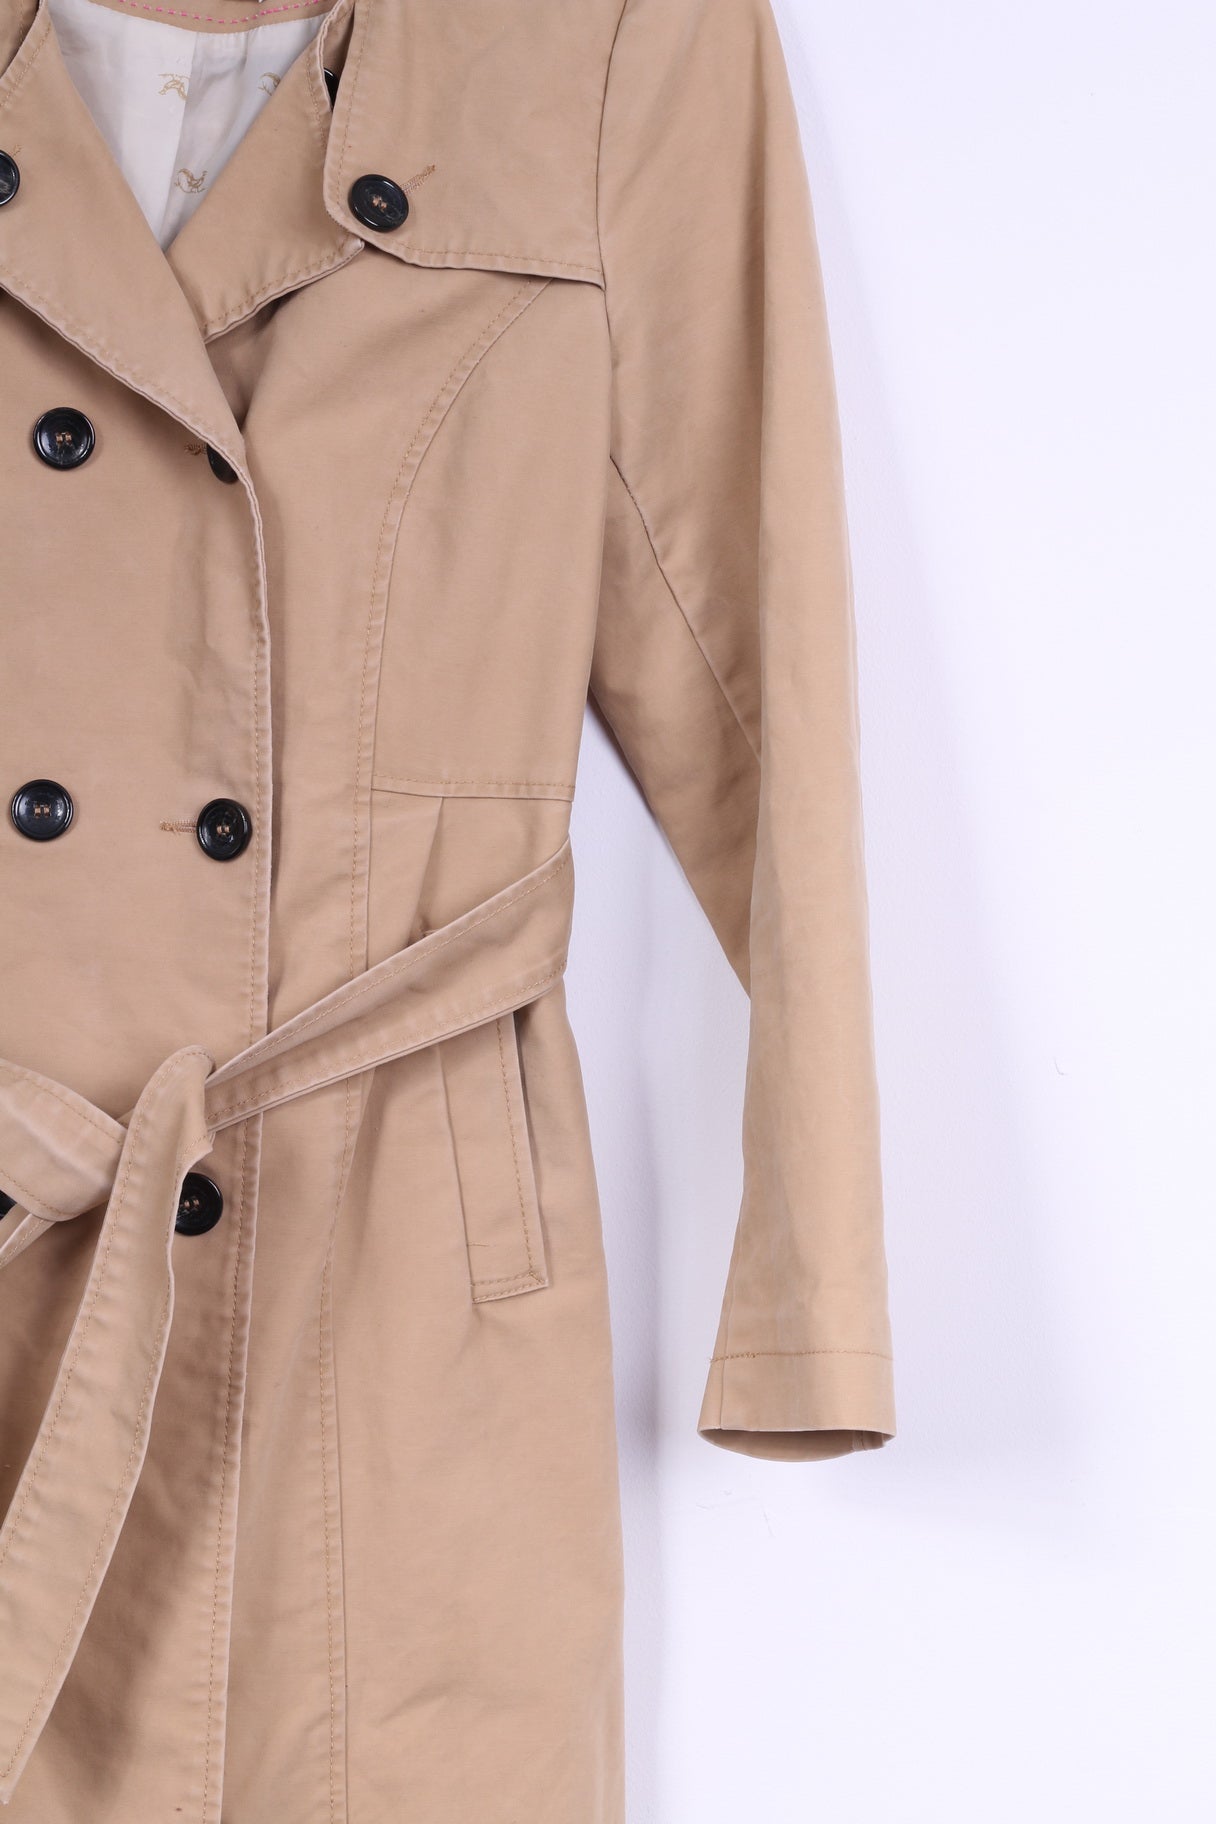 Holly White by Lindex Trench-coat classique en coton beige avec ceinture pour femme 42 M